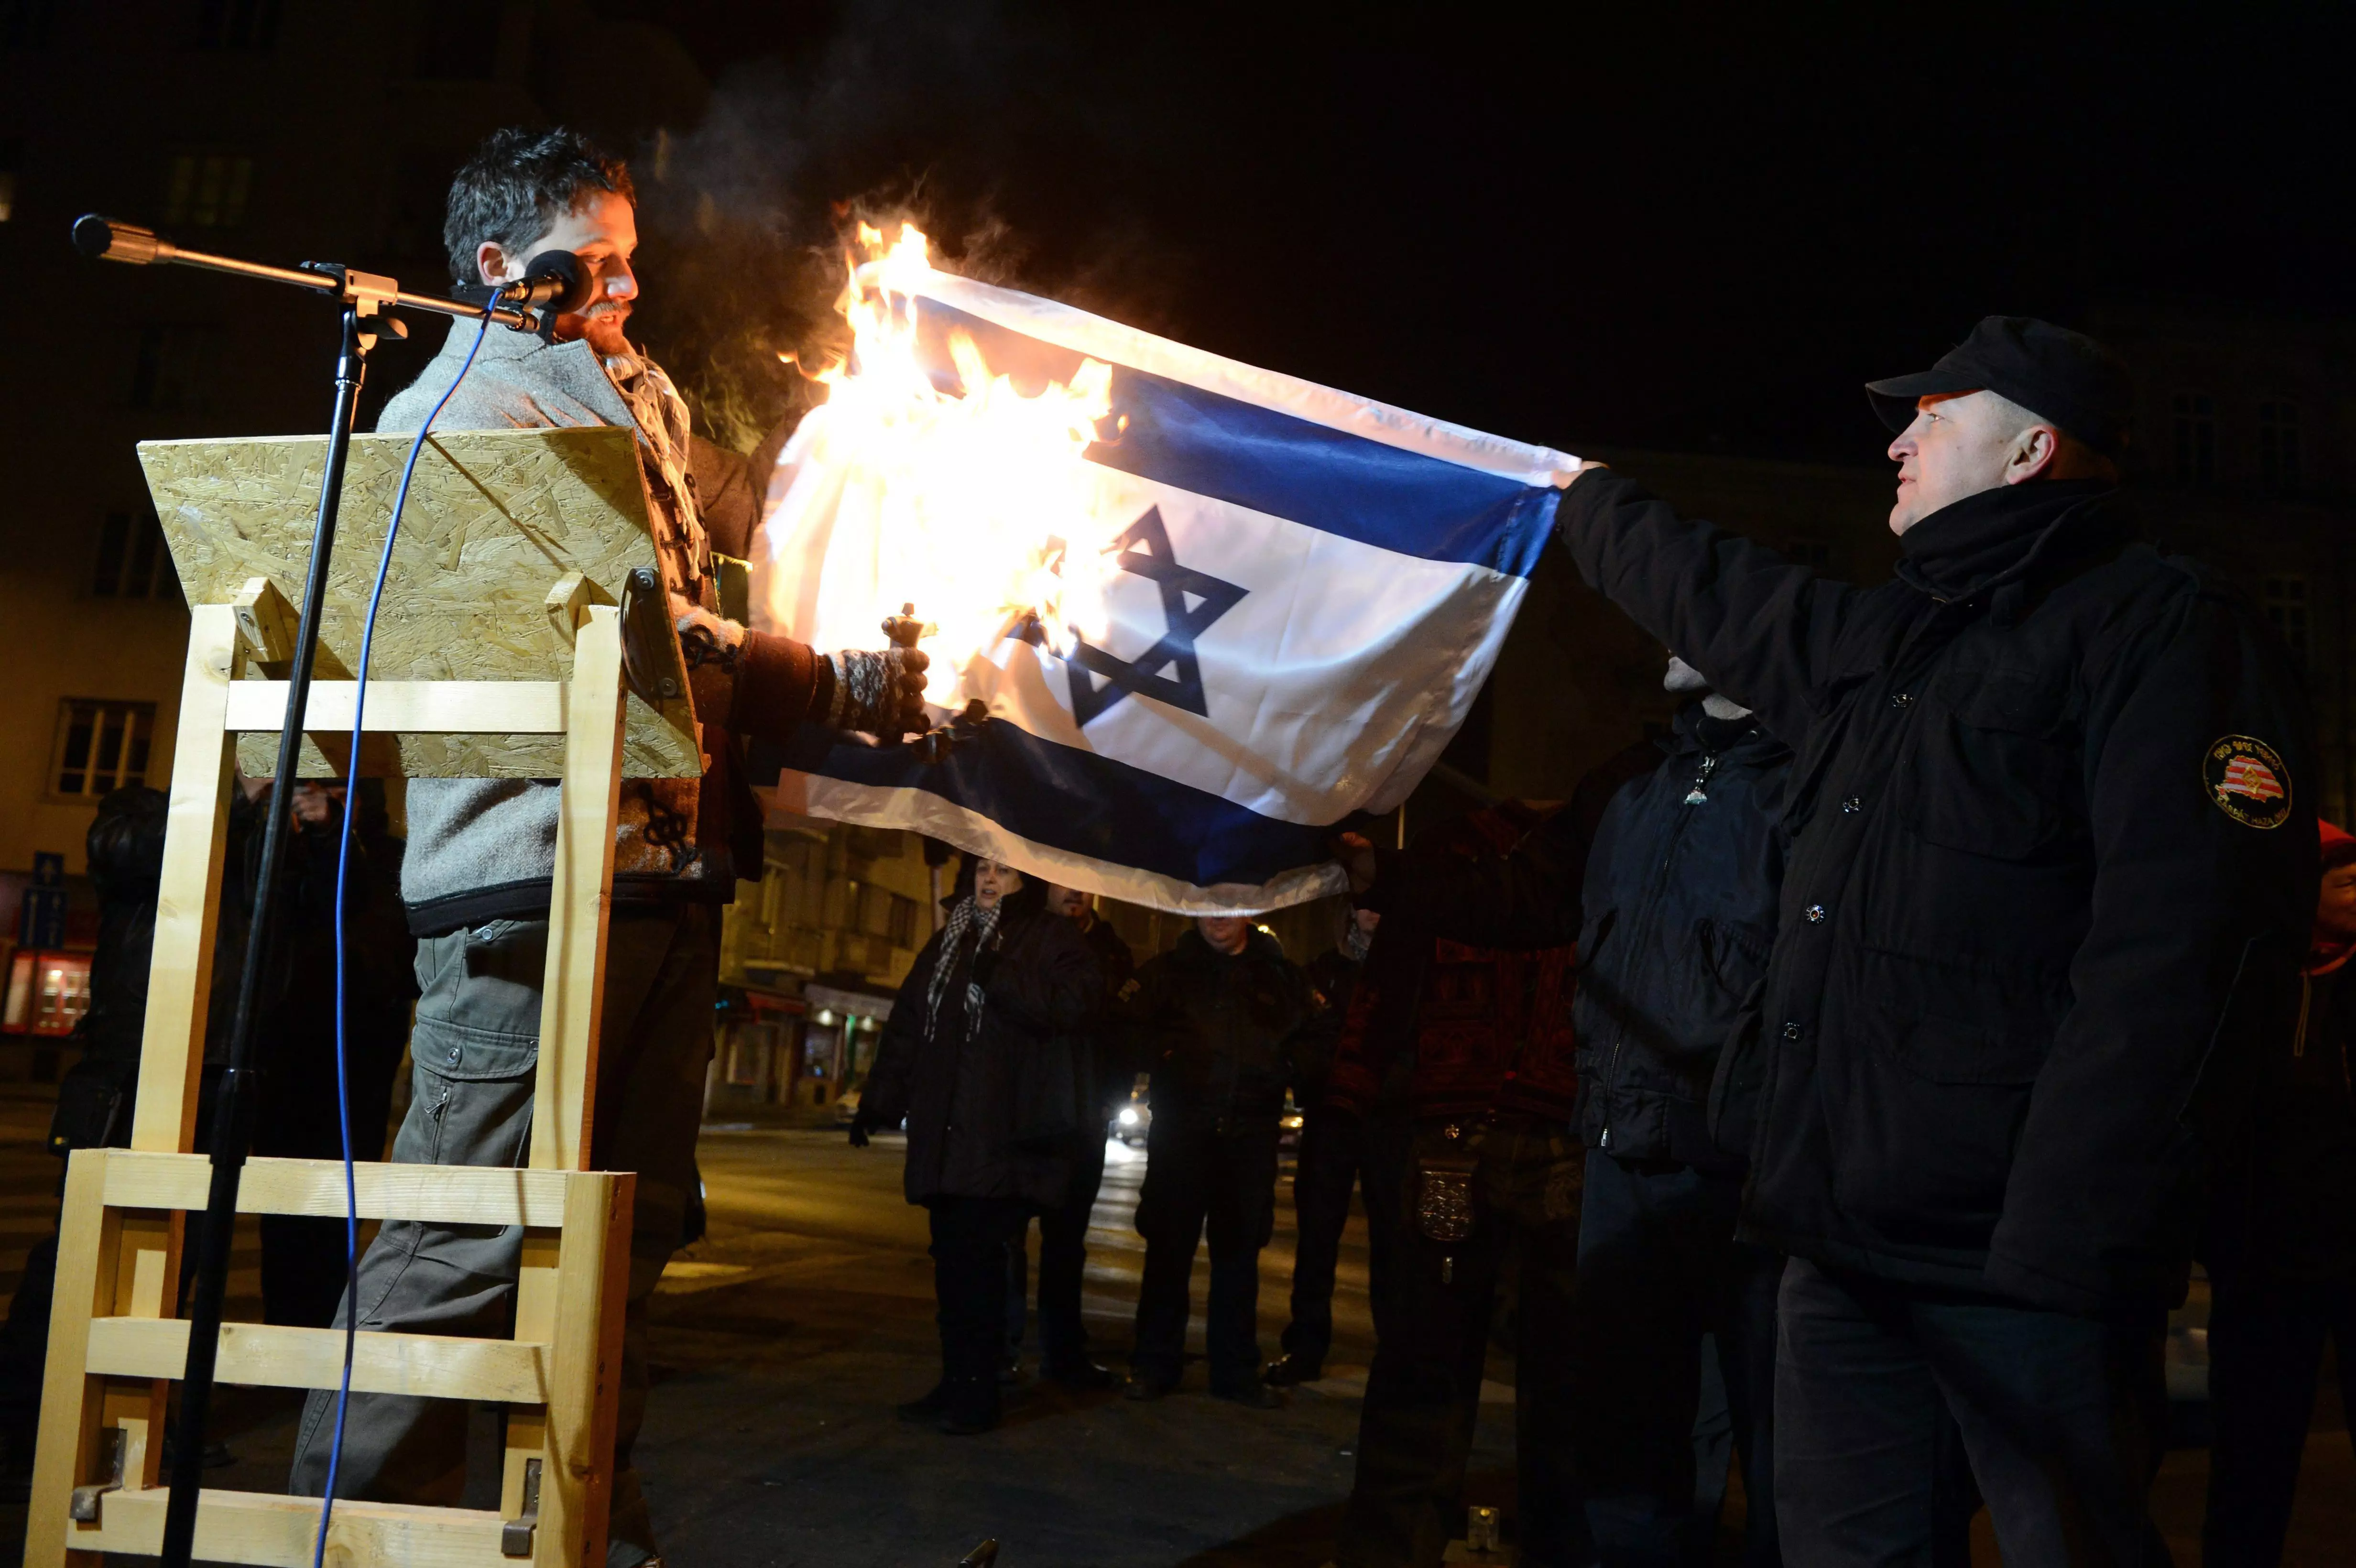 "המון יהודים כבר אינם מתביישים ביהדותם". פעיל "יוביק" מצית דגל ישראל